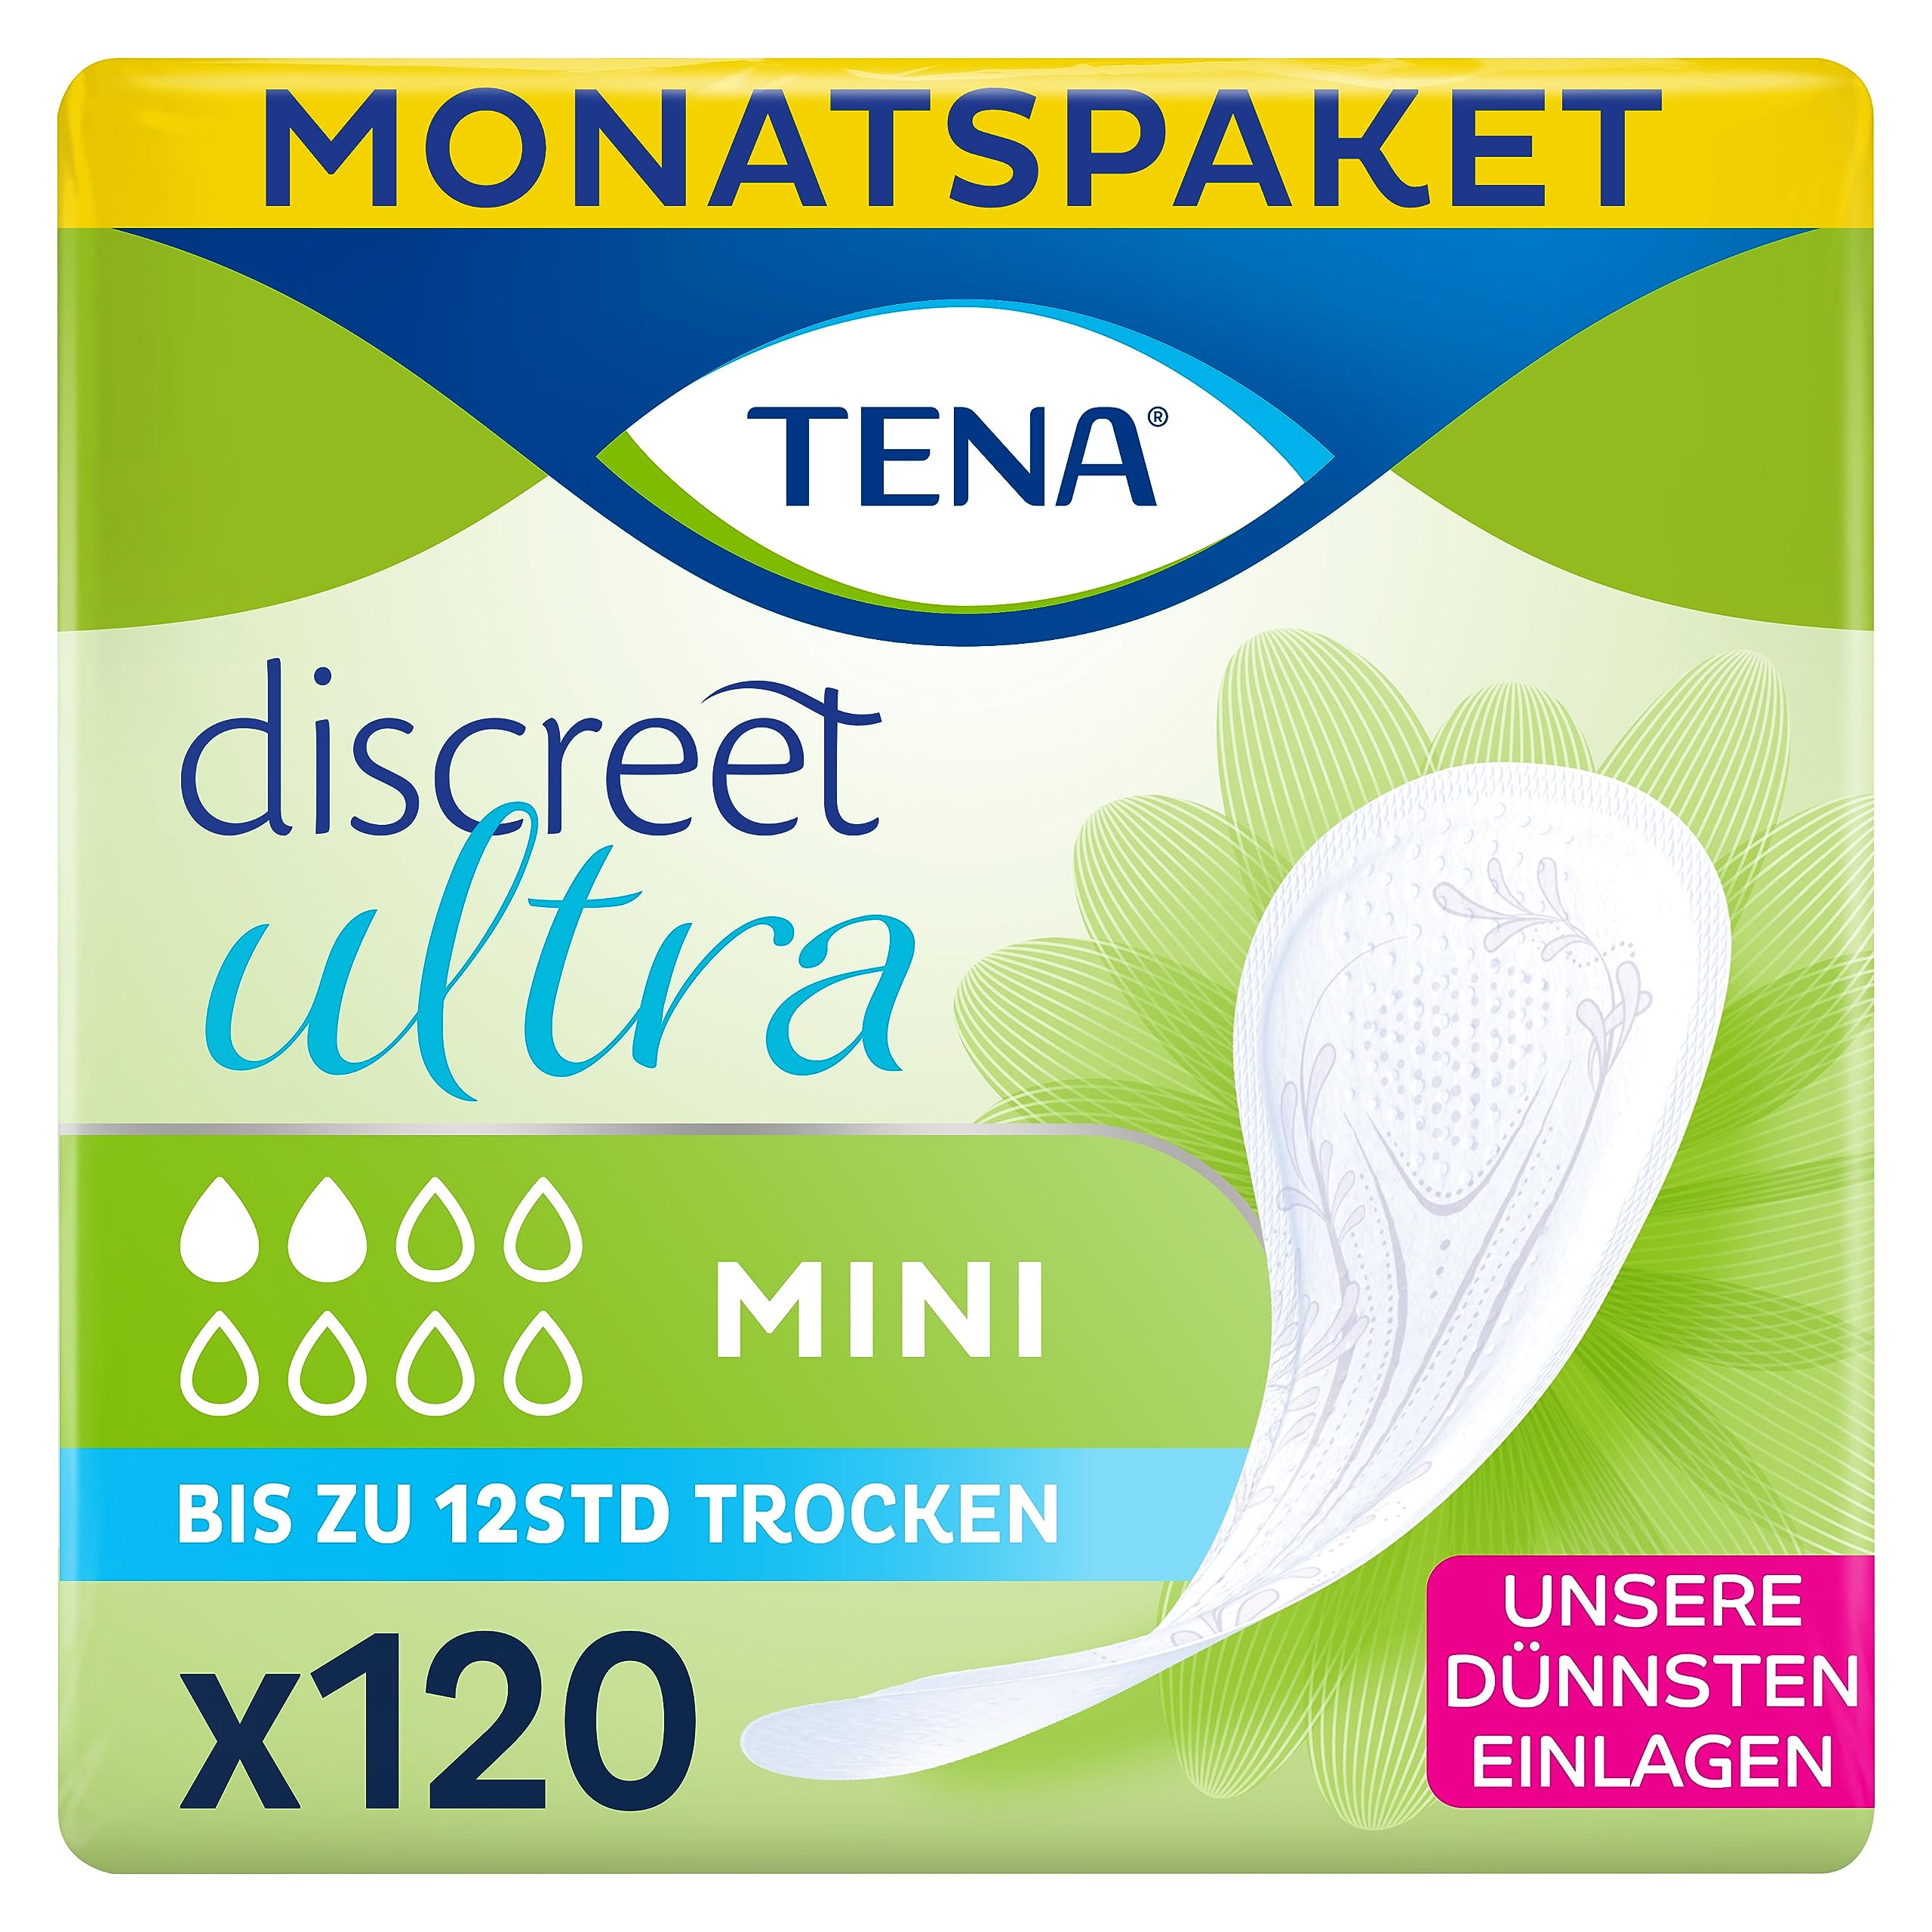 TENA Discreet Mini - 120 Einlagen Im Monatspaket (6 X 20 Stück), Einzeln Verpackt - Hygieneeinlagen Für Frauen - Bei Leichter Blasenschwäche, Inkontinenz Und Bei Tröpfchenverlust